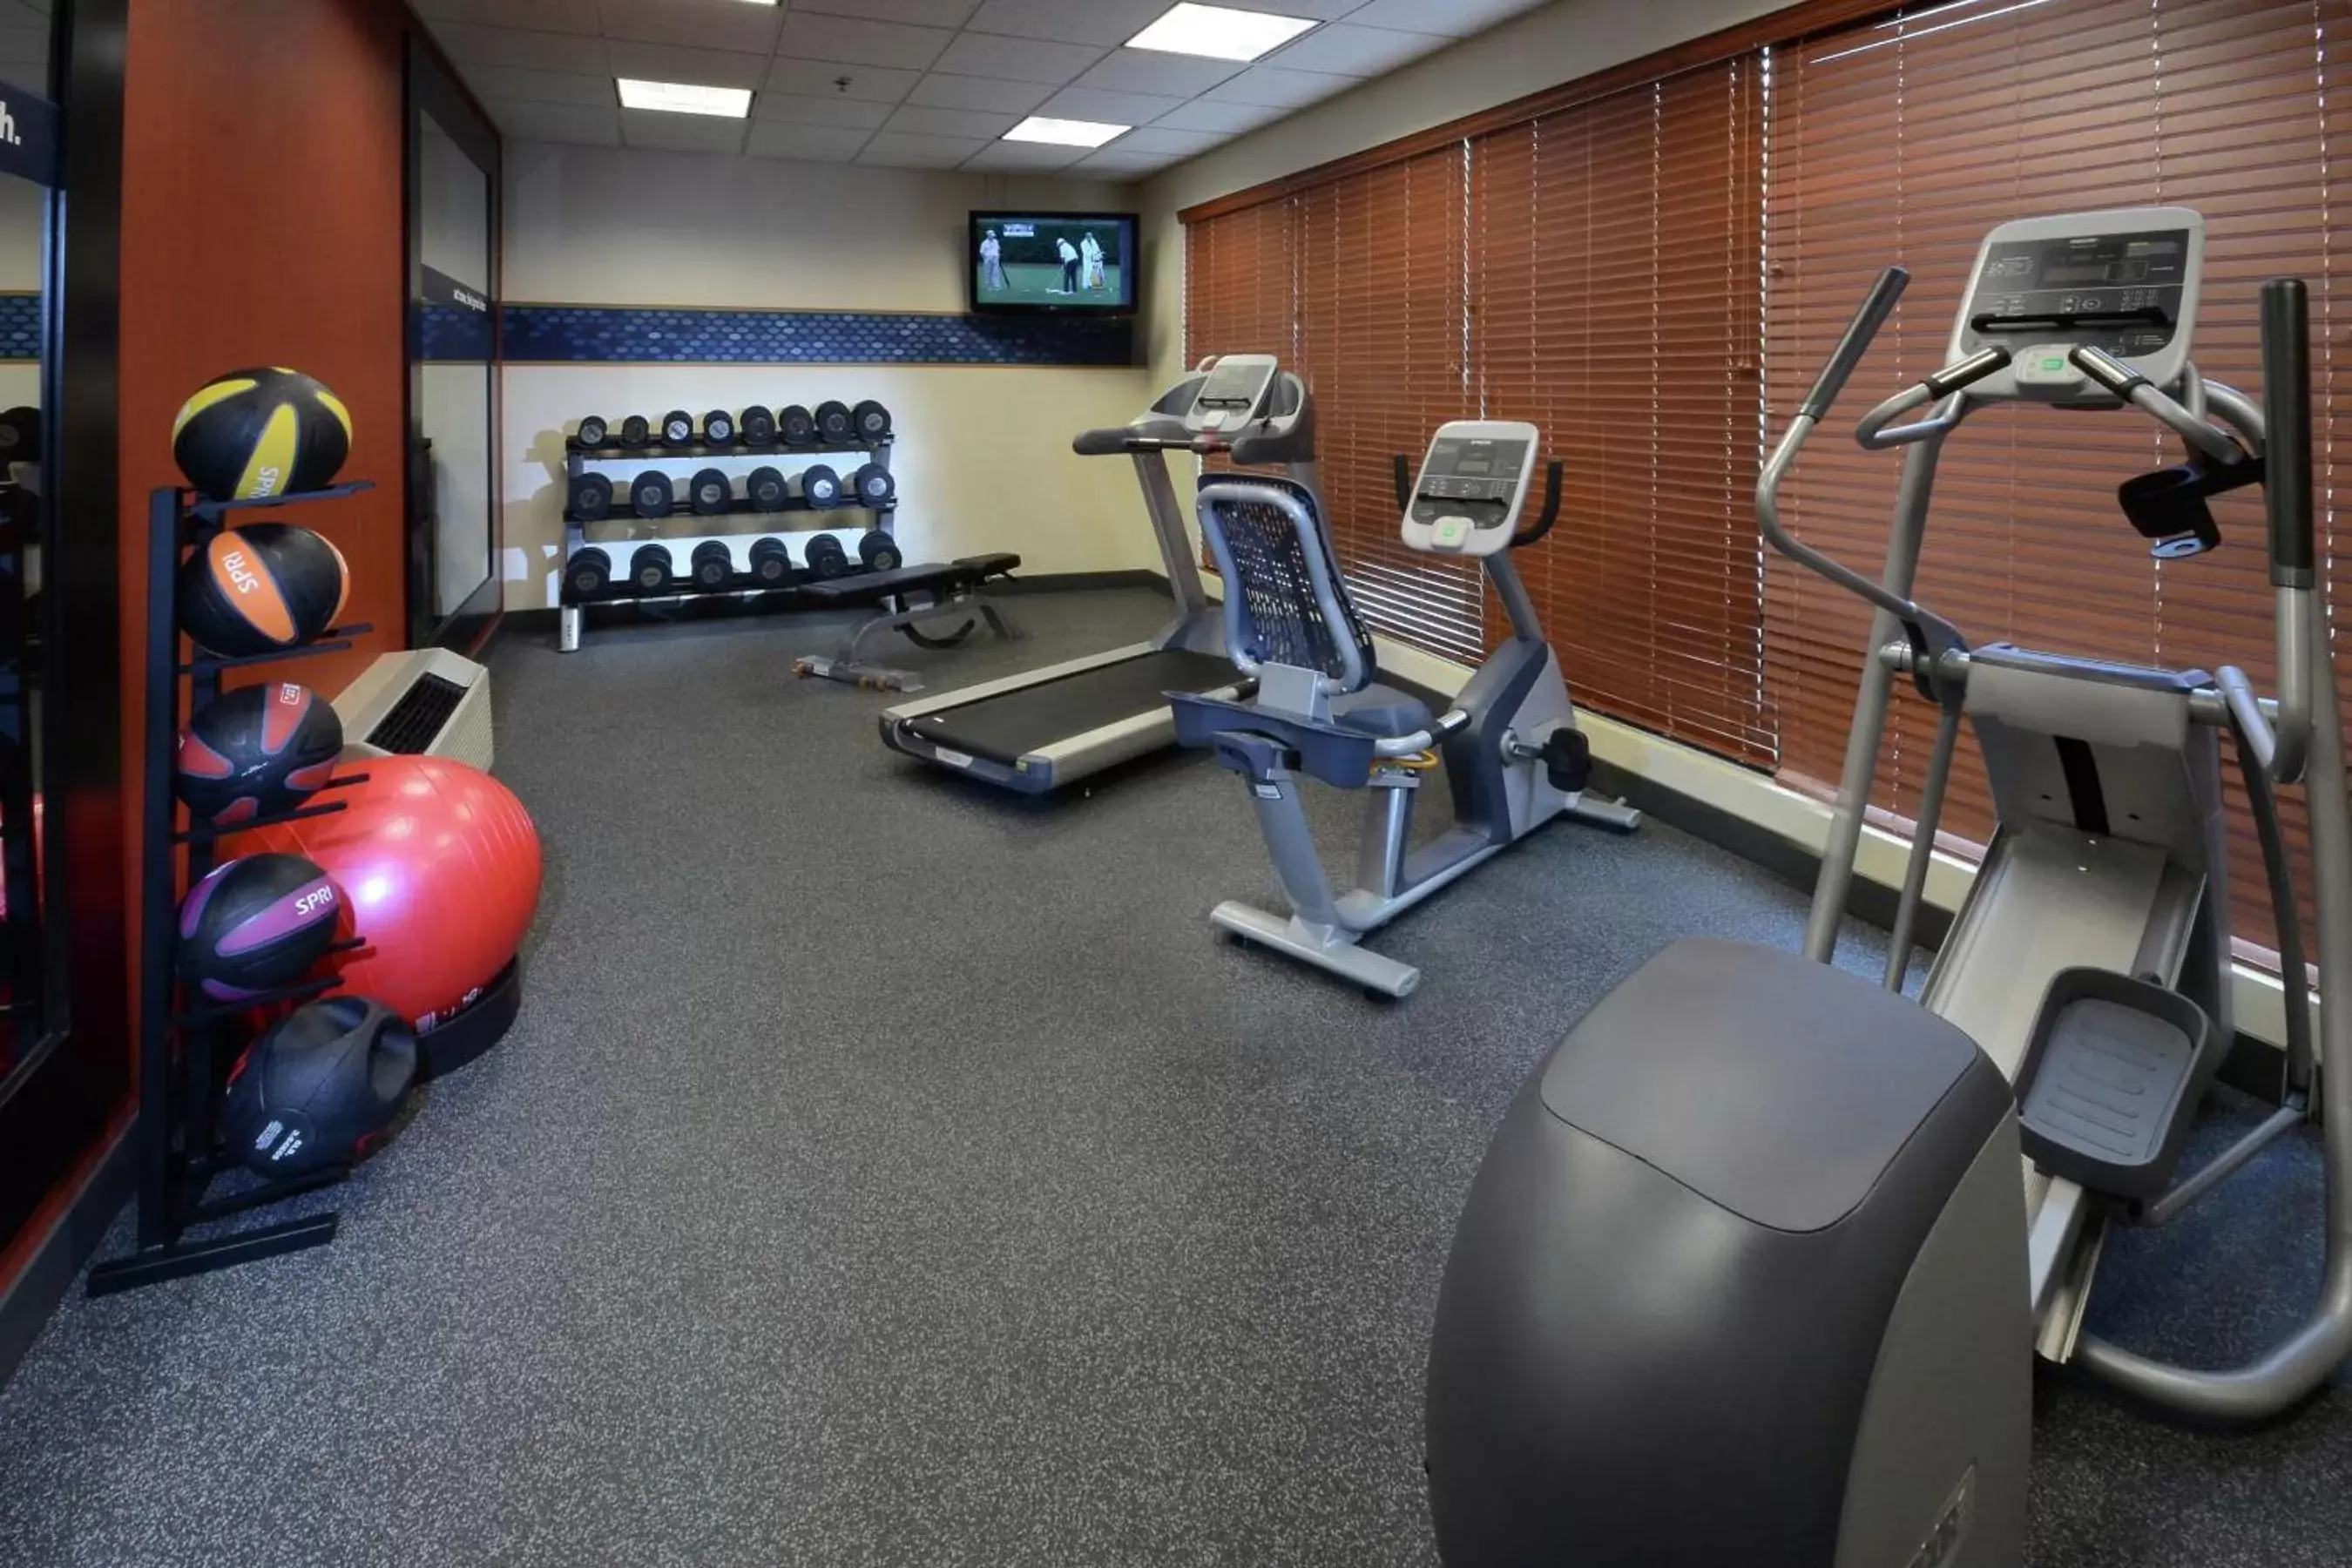 Fitness centre/facilities, Fitness Center/Facilities in Hampton Inn Martinsville